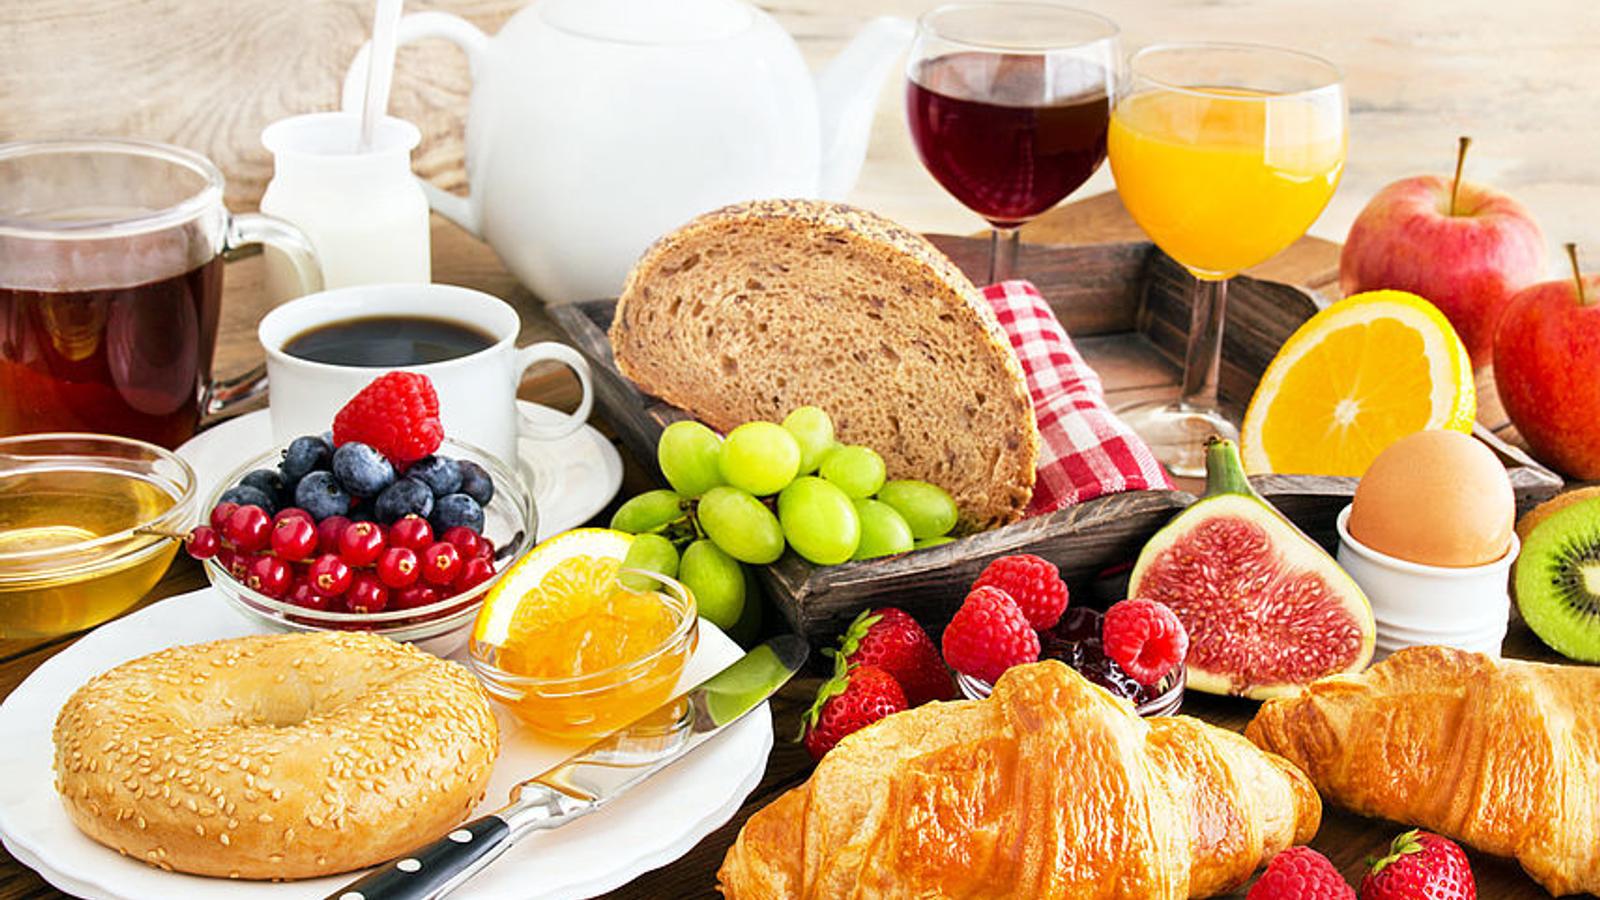 Frühstücksteller mit Obst, Gebäck und Getränken